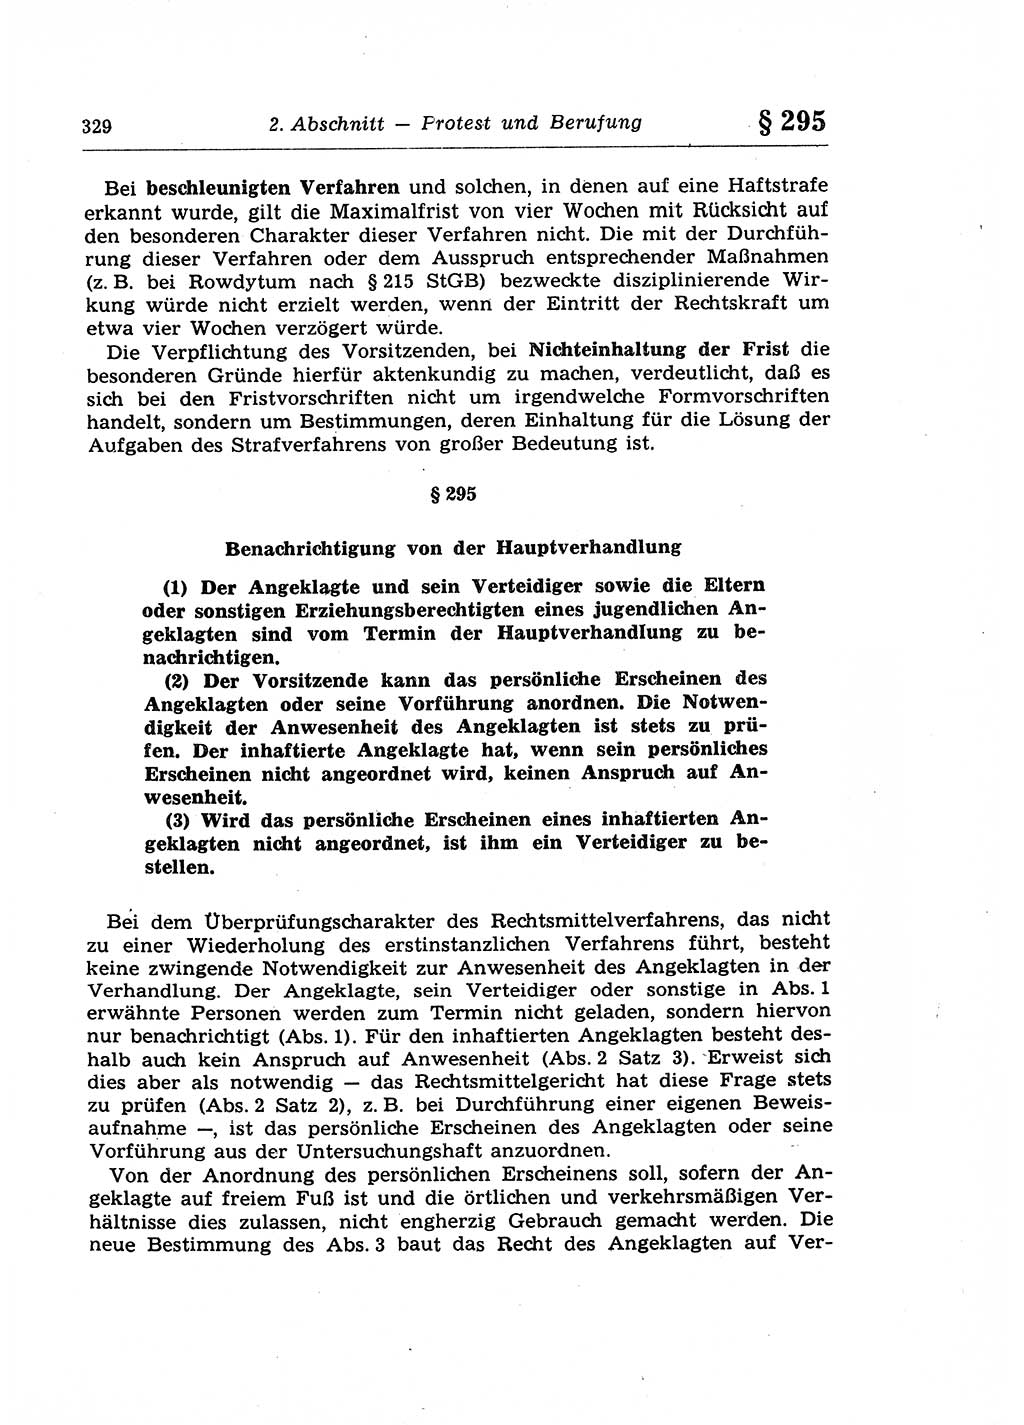 Strafprozeßrecht der DDR (Deutsche Demokratische Republik), Lehrkommentar zur Strafprozeßordnung (StPO) 1968, Seite 329 (Strafprozeßr. DDR Lehrkomm. StPO 19688, S. 329)